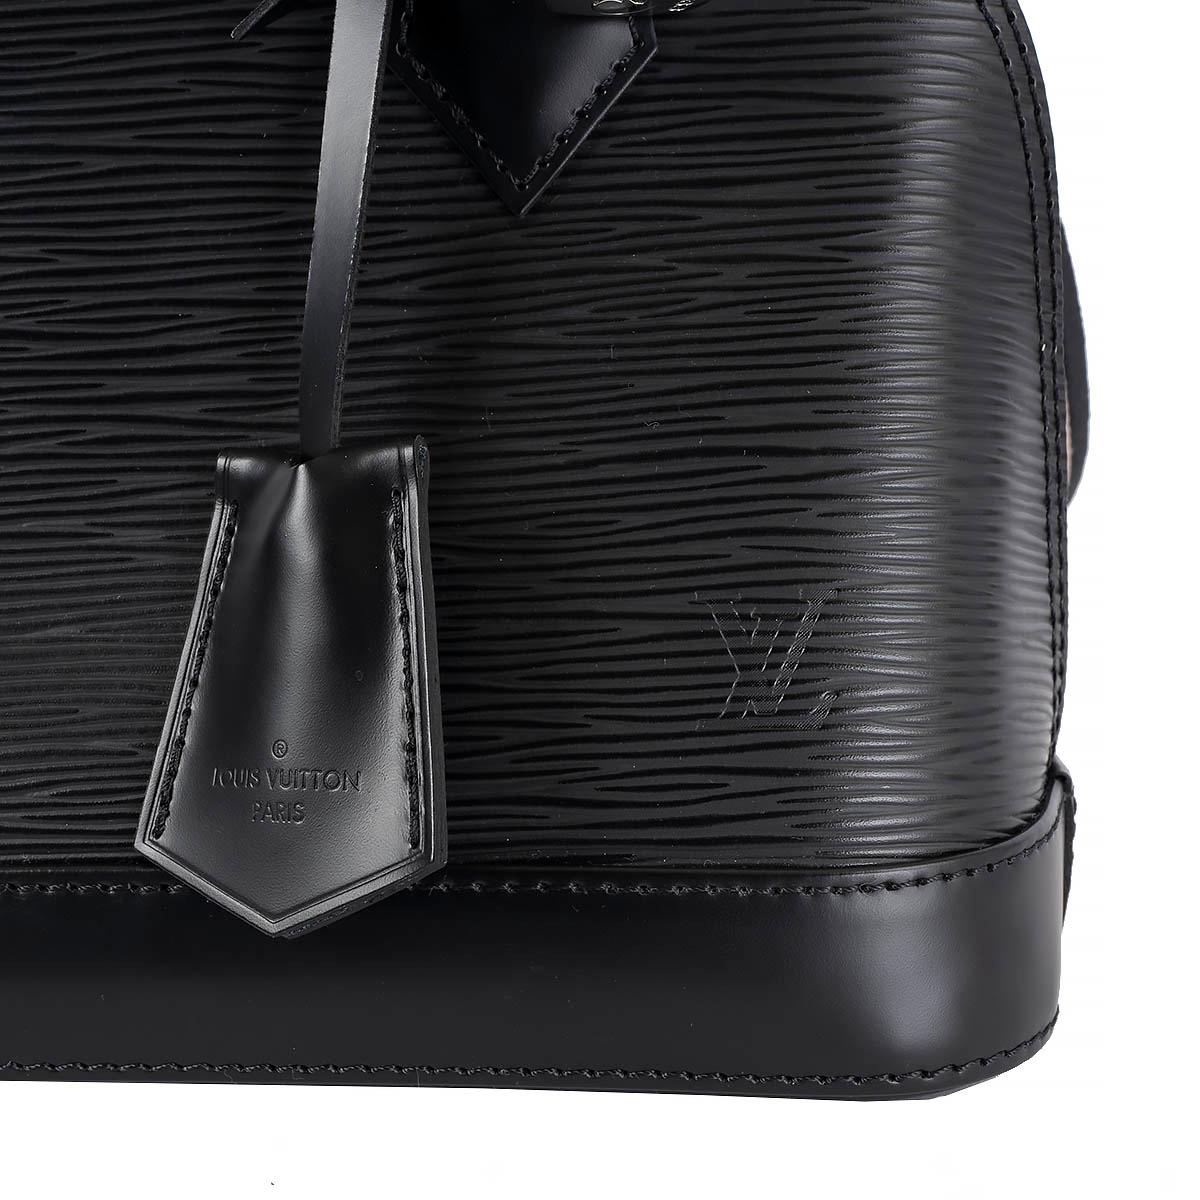 LOUIS VUITTON black Epi leather ALMA BB w JACQUARD STRAP Shoulder Bag 3